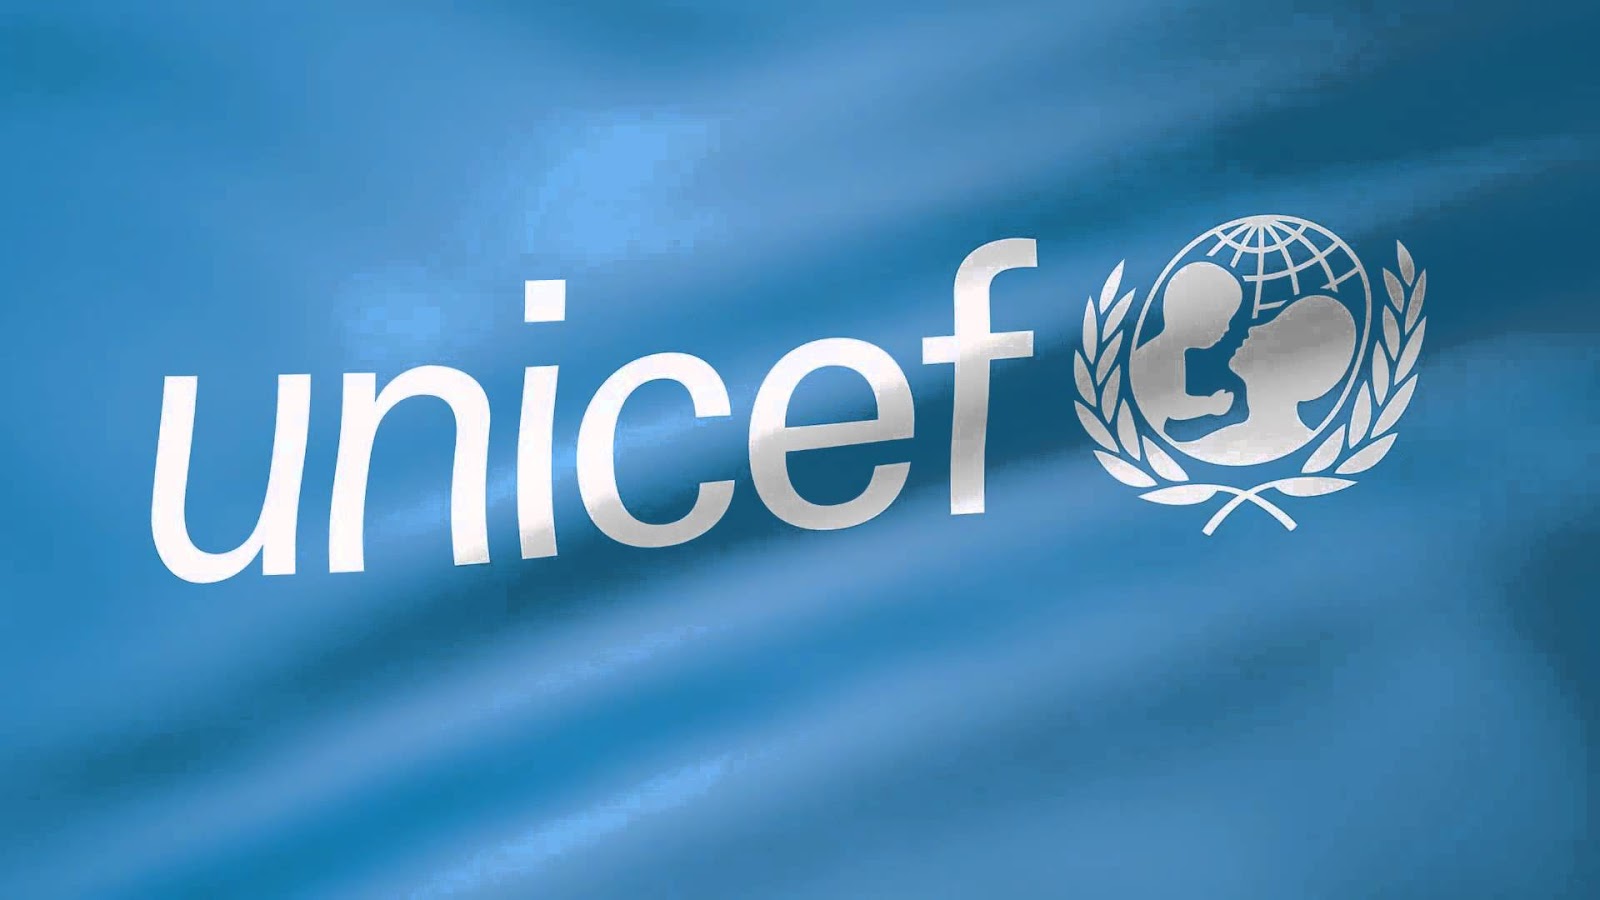 Αγοράζοντας Σχολικά UNICEF βοηθάτε να πάνε σχολείο ακόμα περισσότερα παιδιά - Φωτογραφία 1